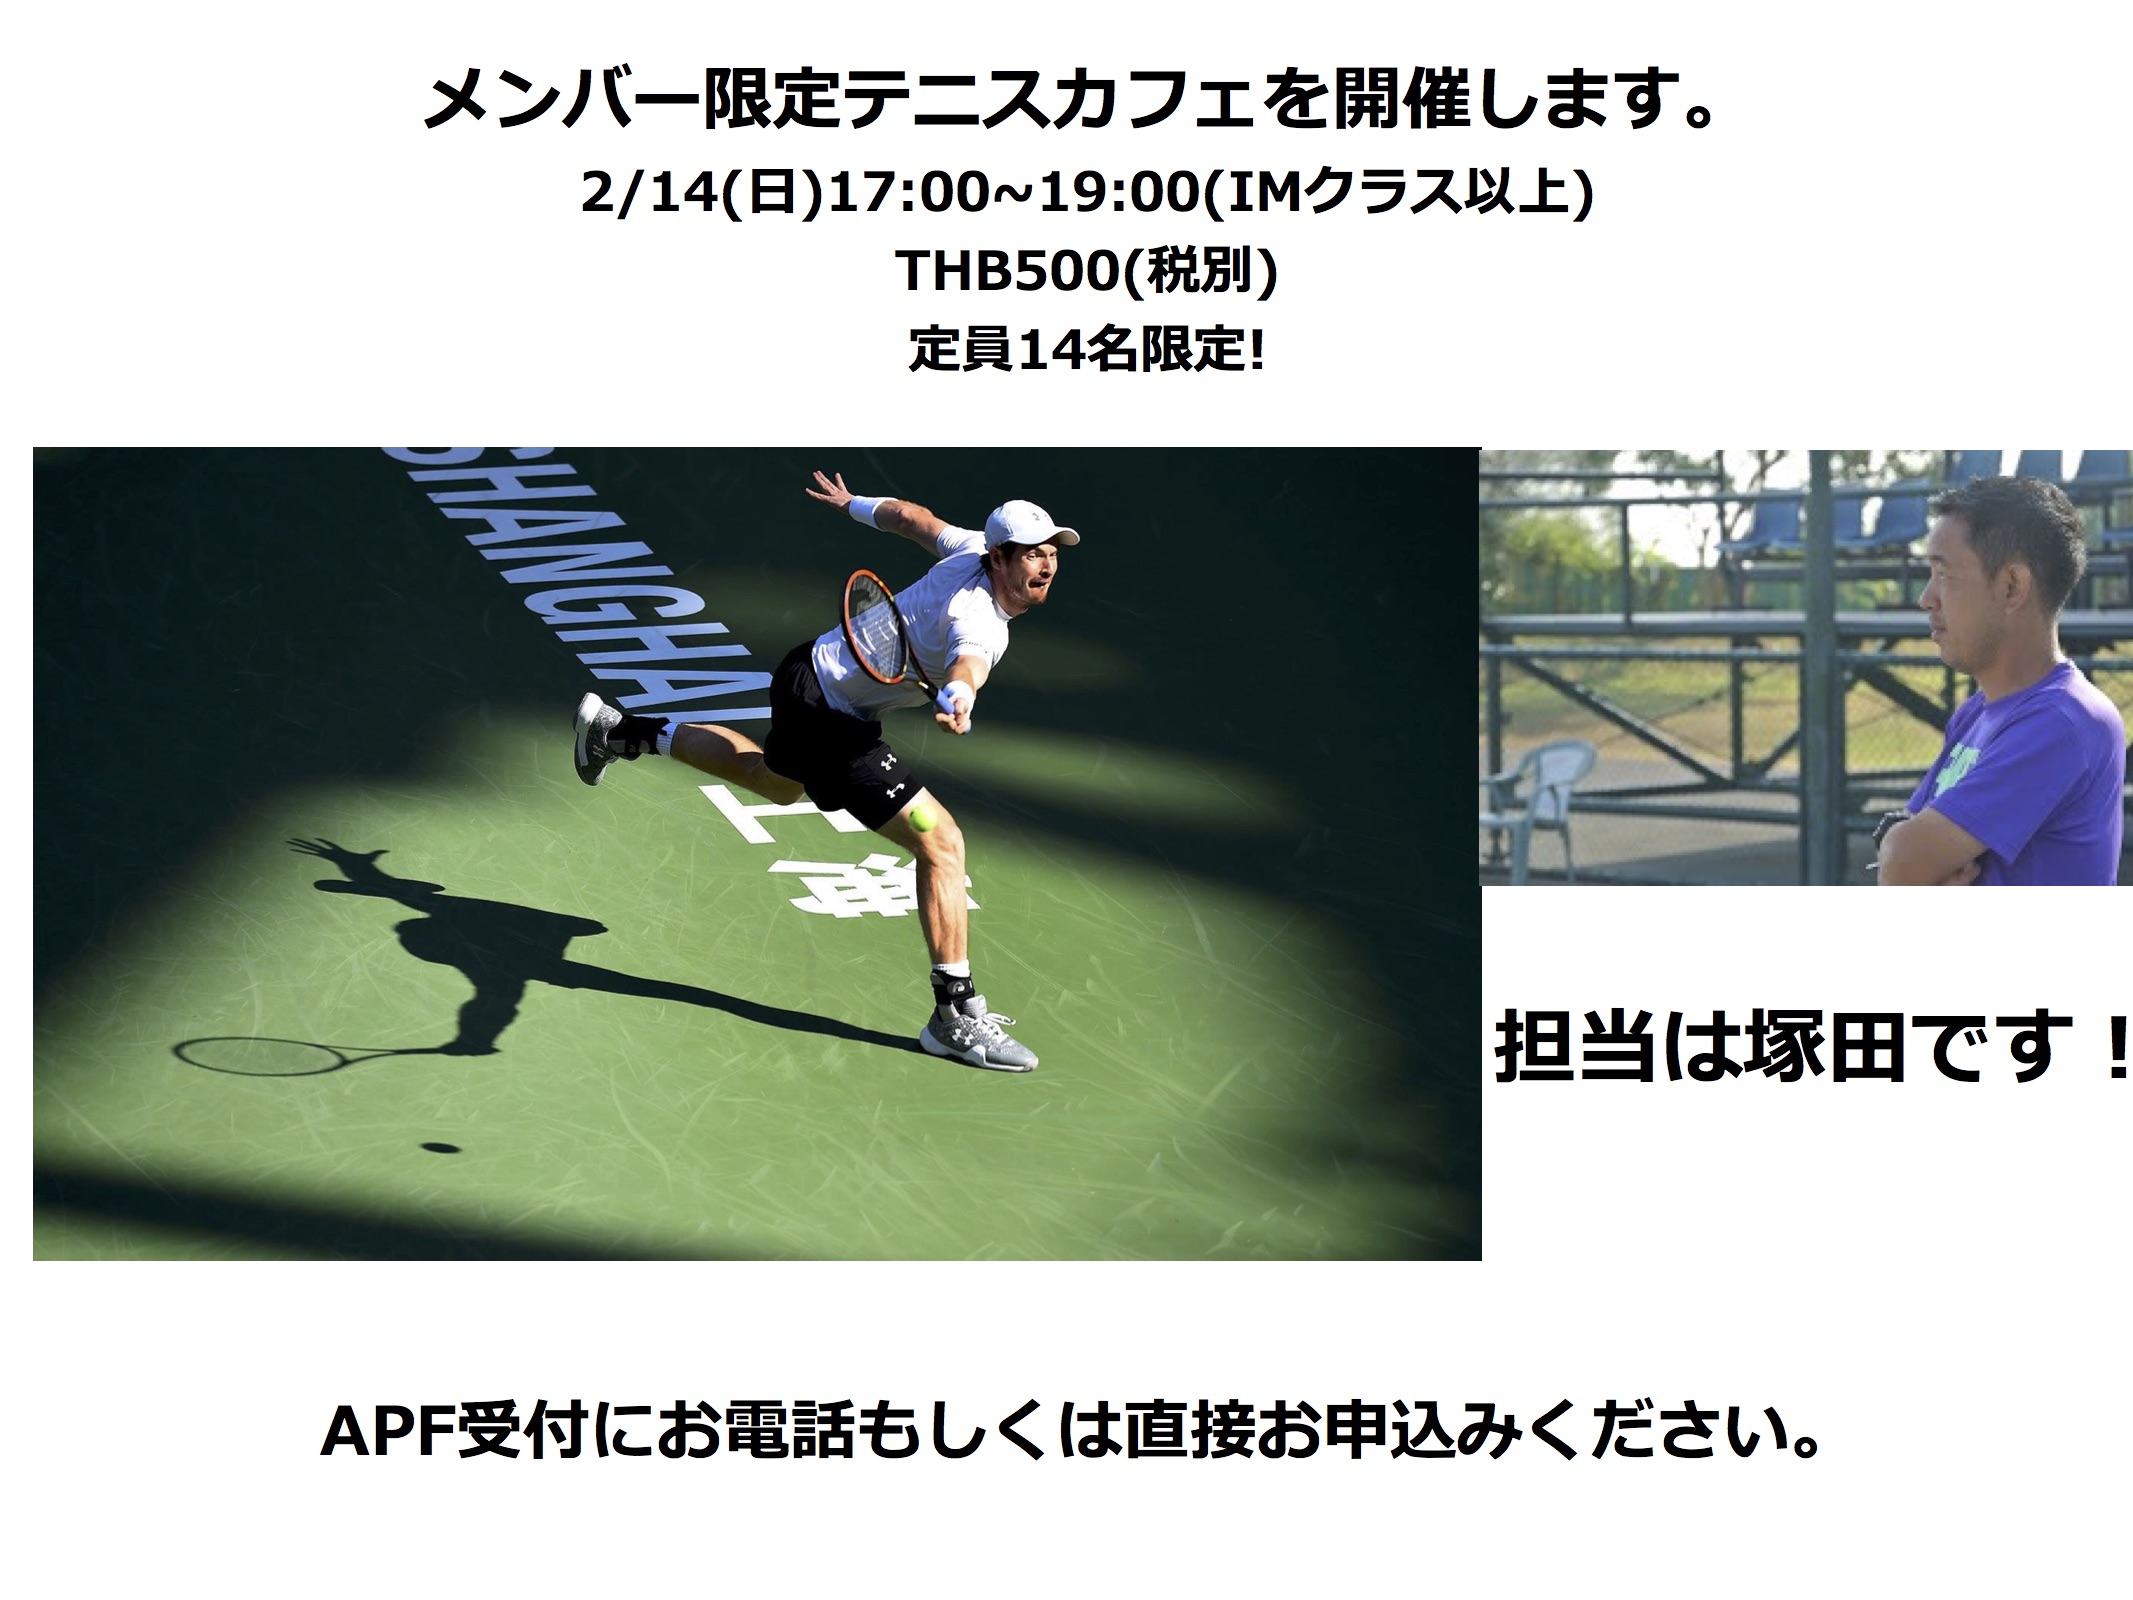 20160214_テニスカフェ